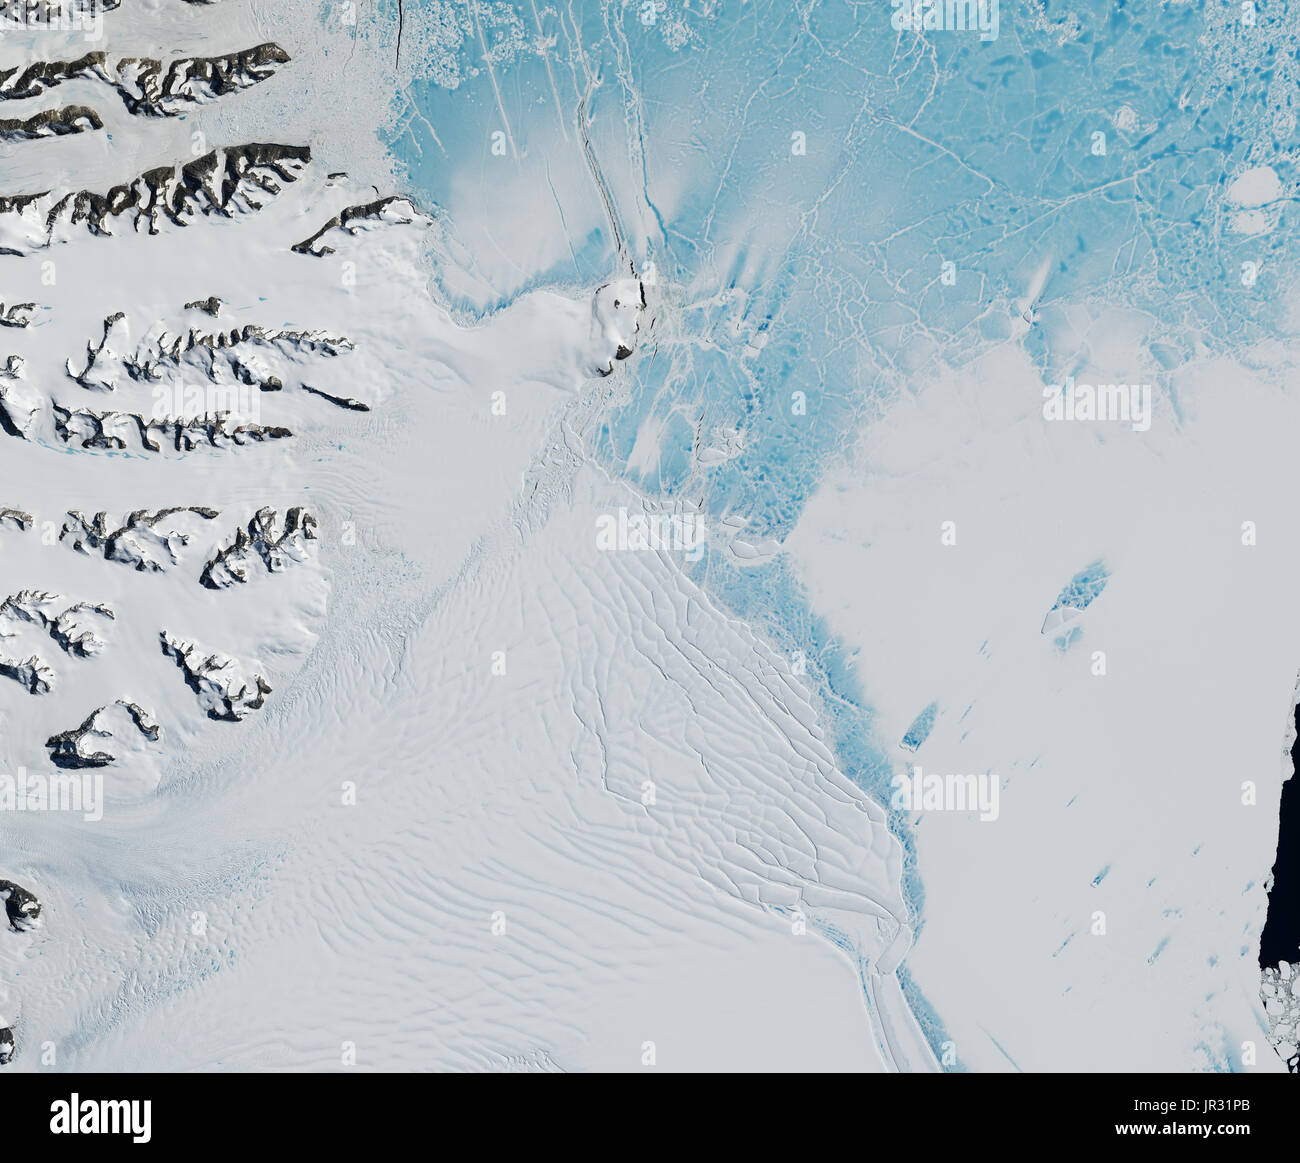 La cicatrice ingresso ripiano ghiaccio, del sud del resto di Larsen B, catturata dalla terra operative imager (OLI) sul satellite Landsat 8 su 6 gennaio 2016. Il resto del Larsen B crollato nel 2002. Foto Stock